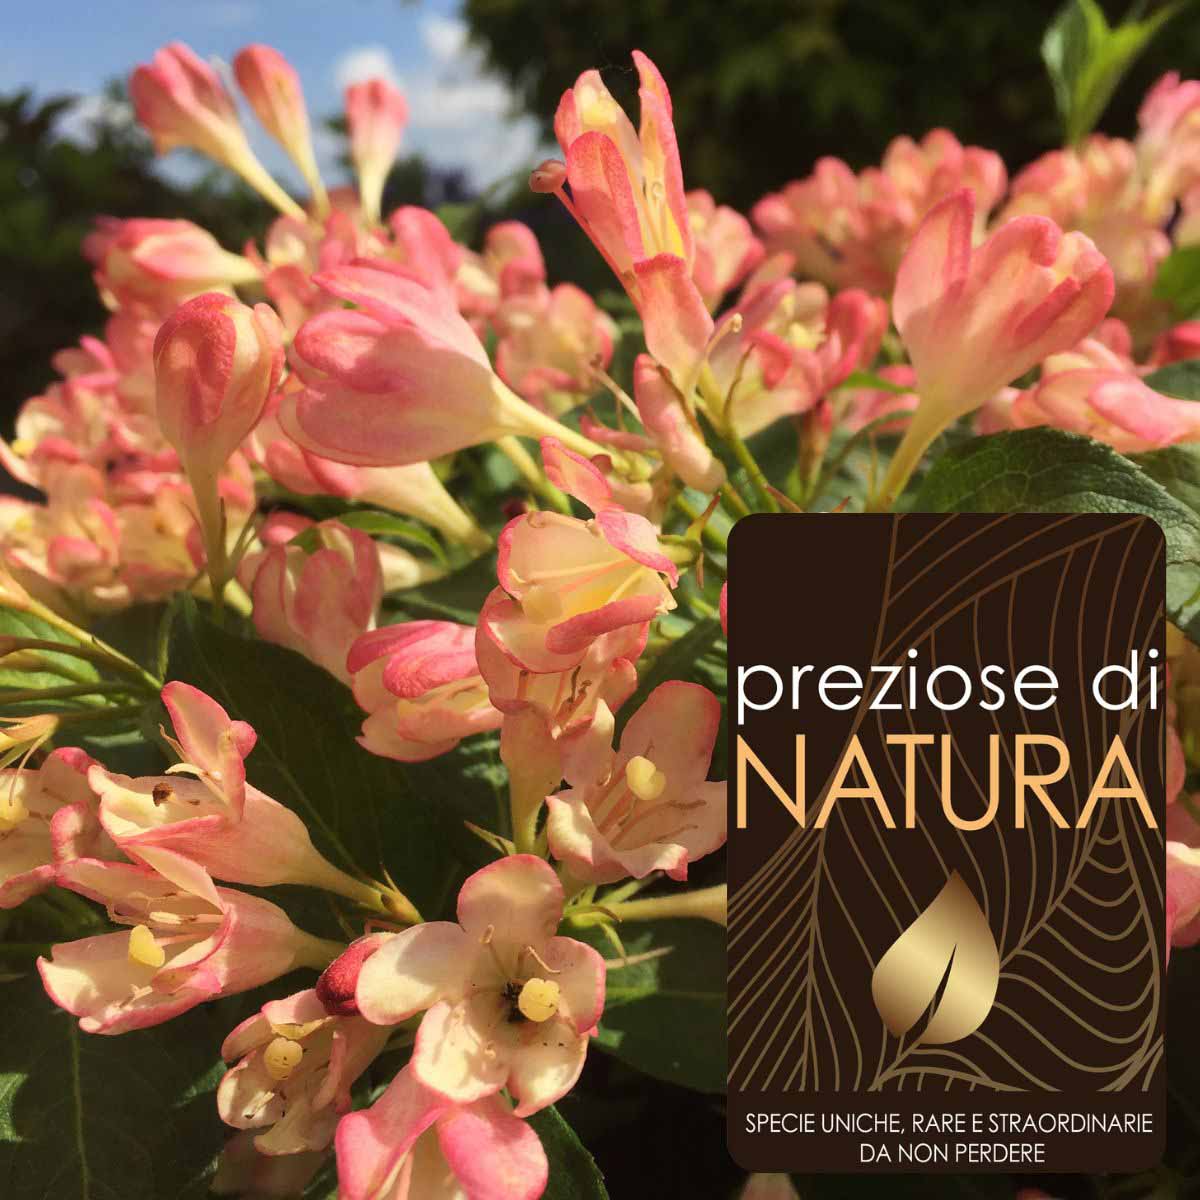 Preziose di Natura – Weigela “All Summer Peach”